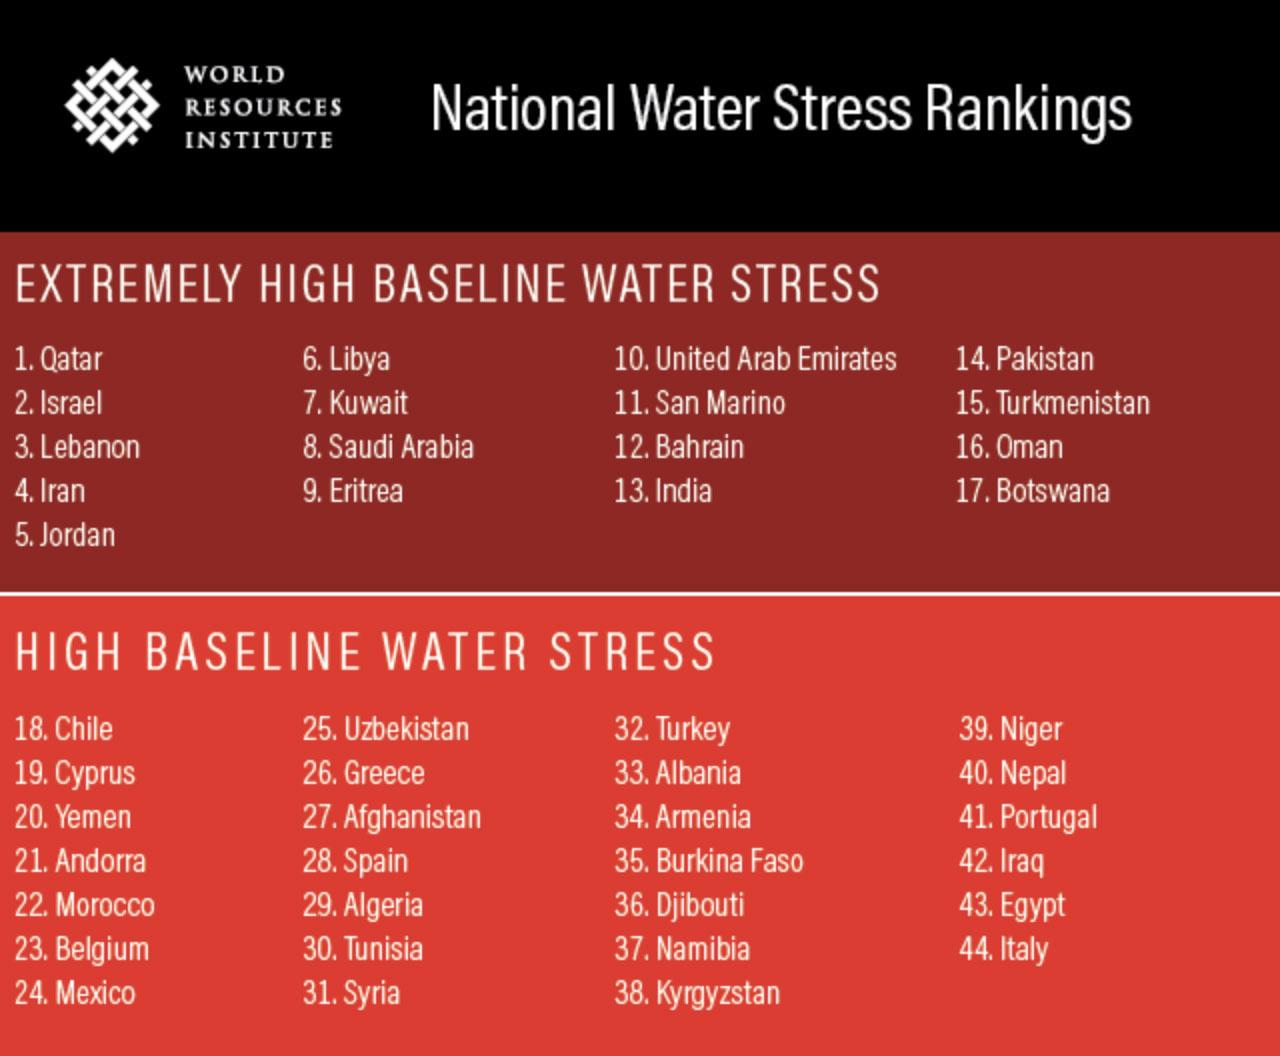 België op 23e plaats in ranglijst extreme waterstress: 'Dit is de crisis waar niemand over praat'